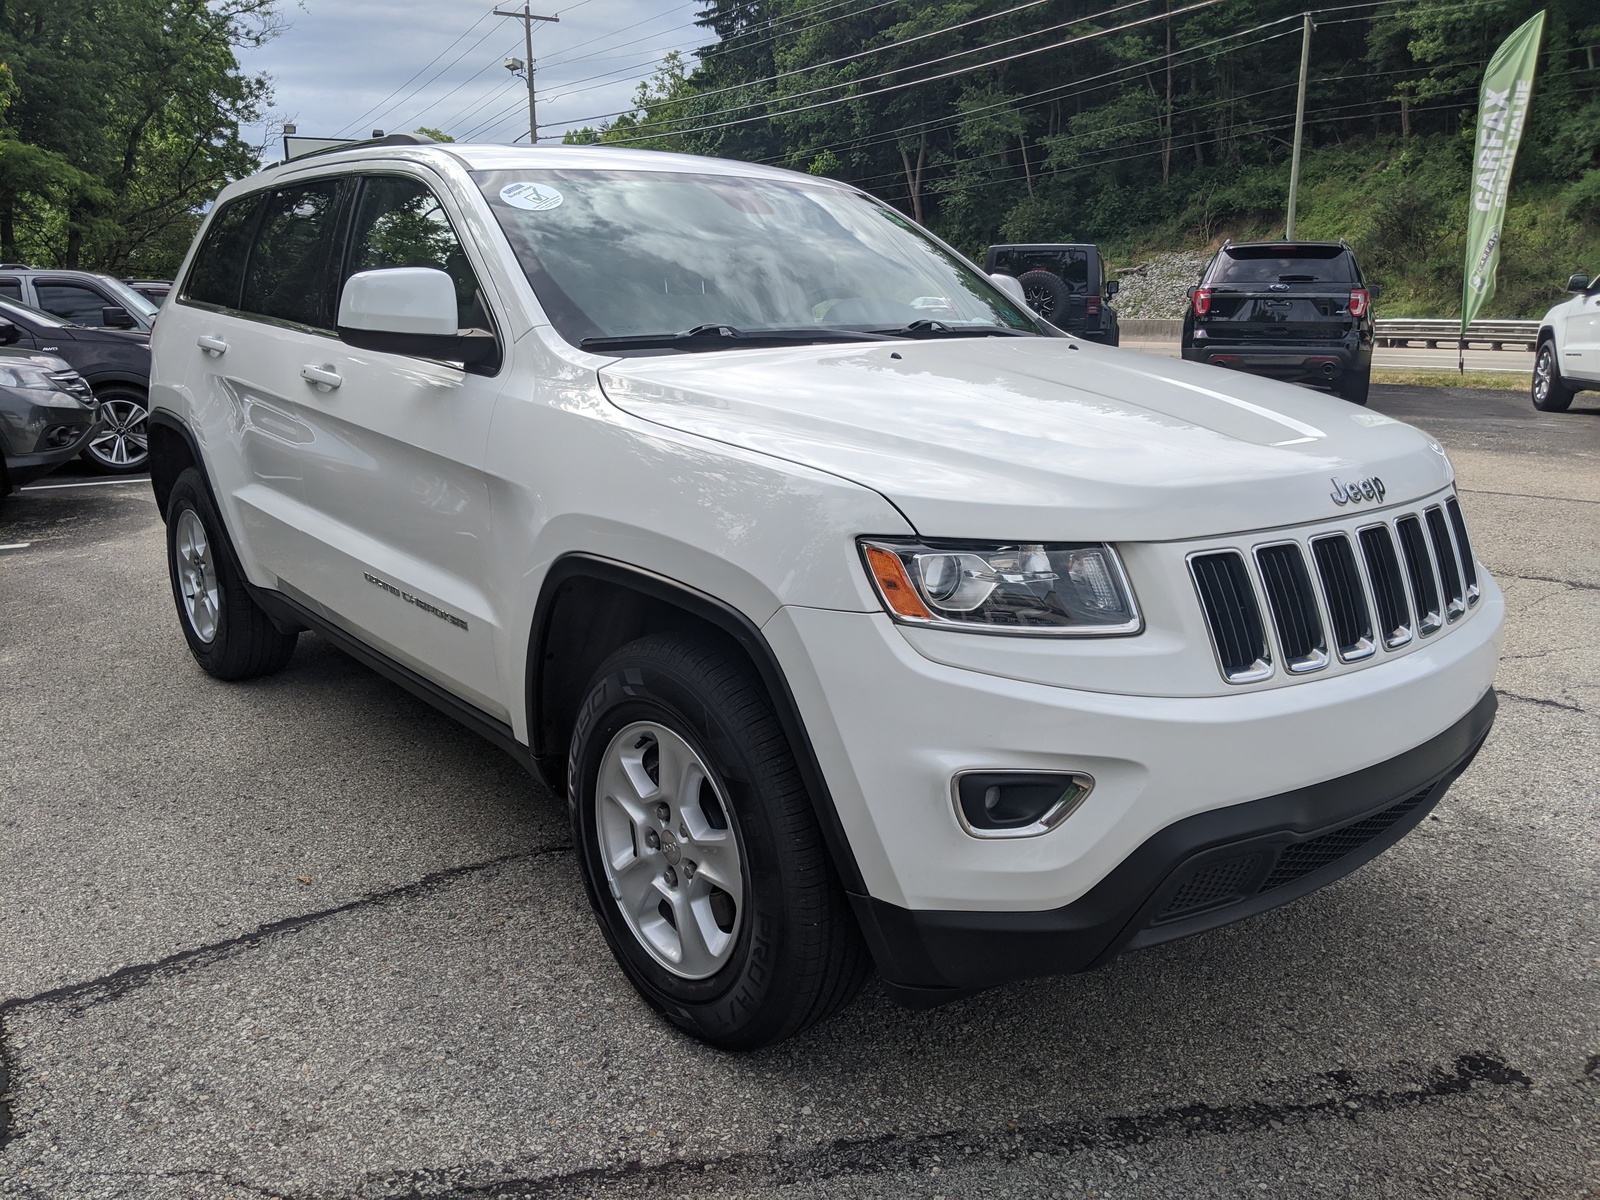 PreOwned 2014 Jeep Grand Cherokee Laredo in Bright White